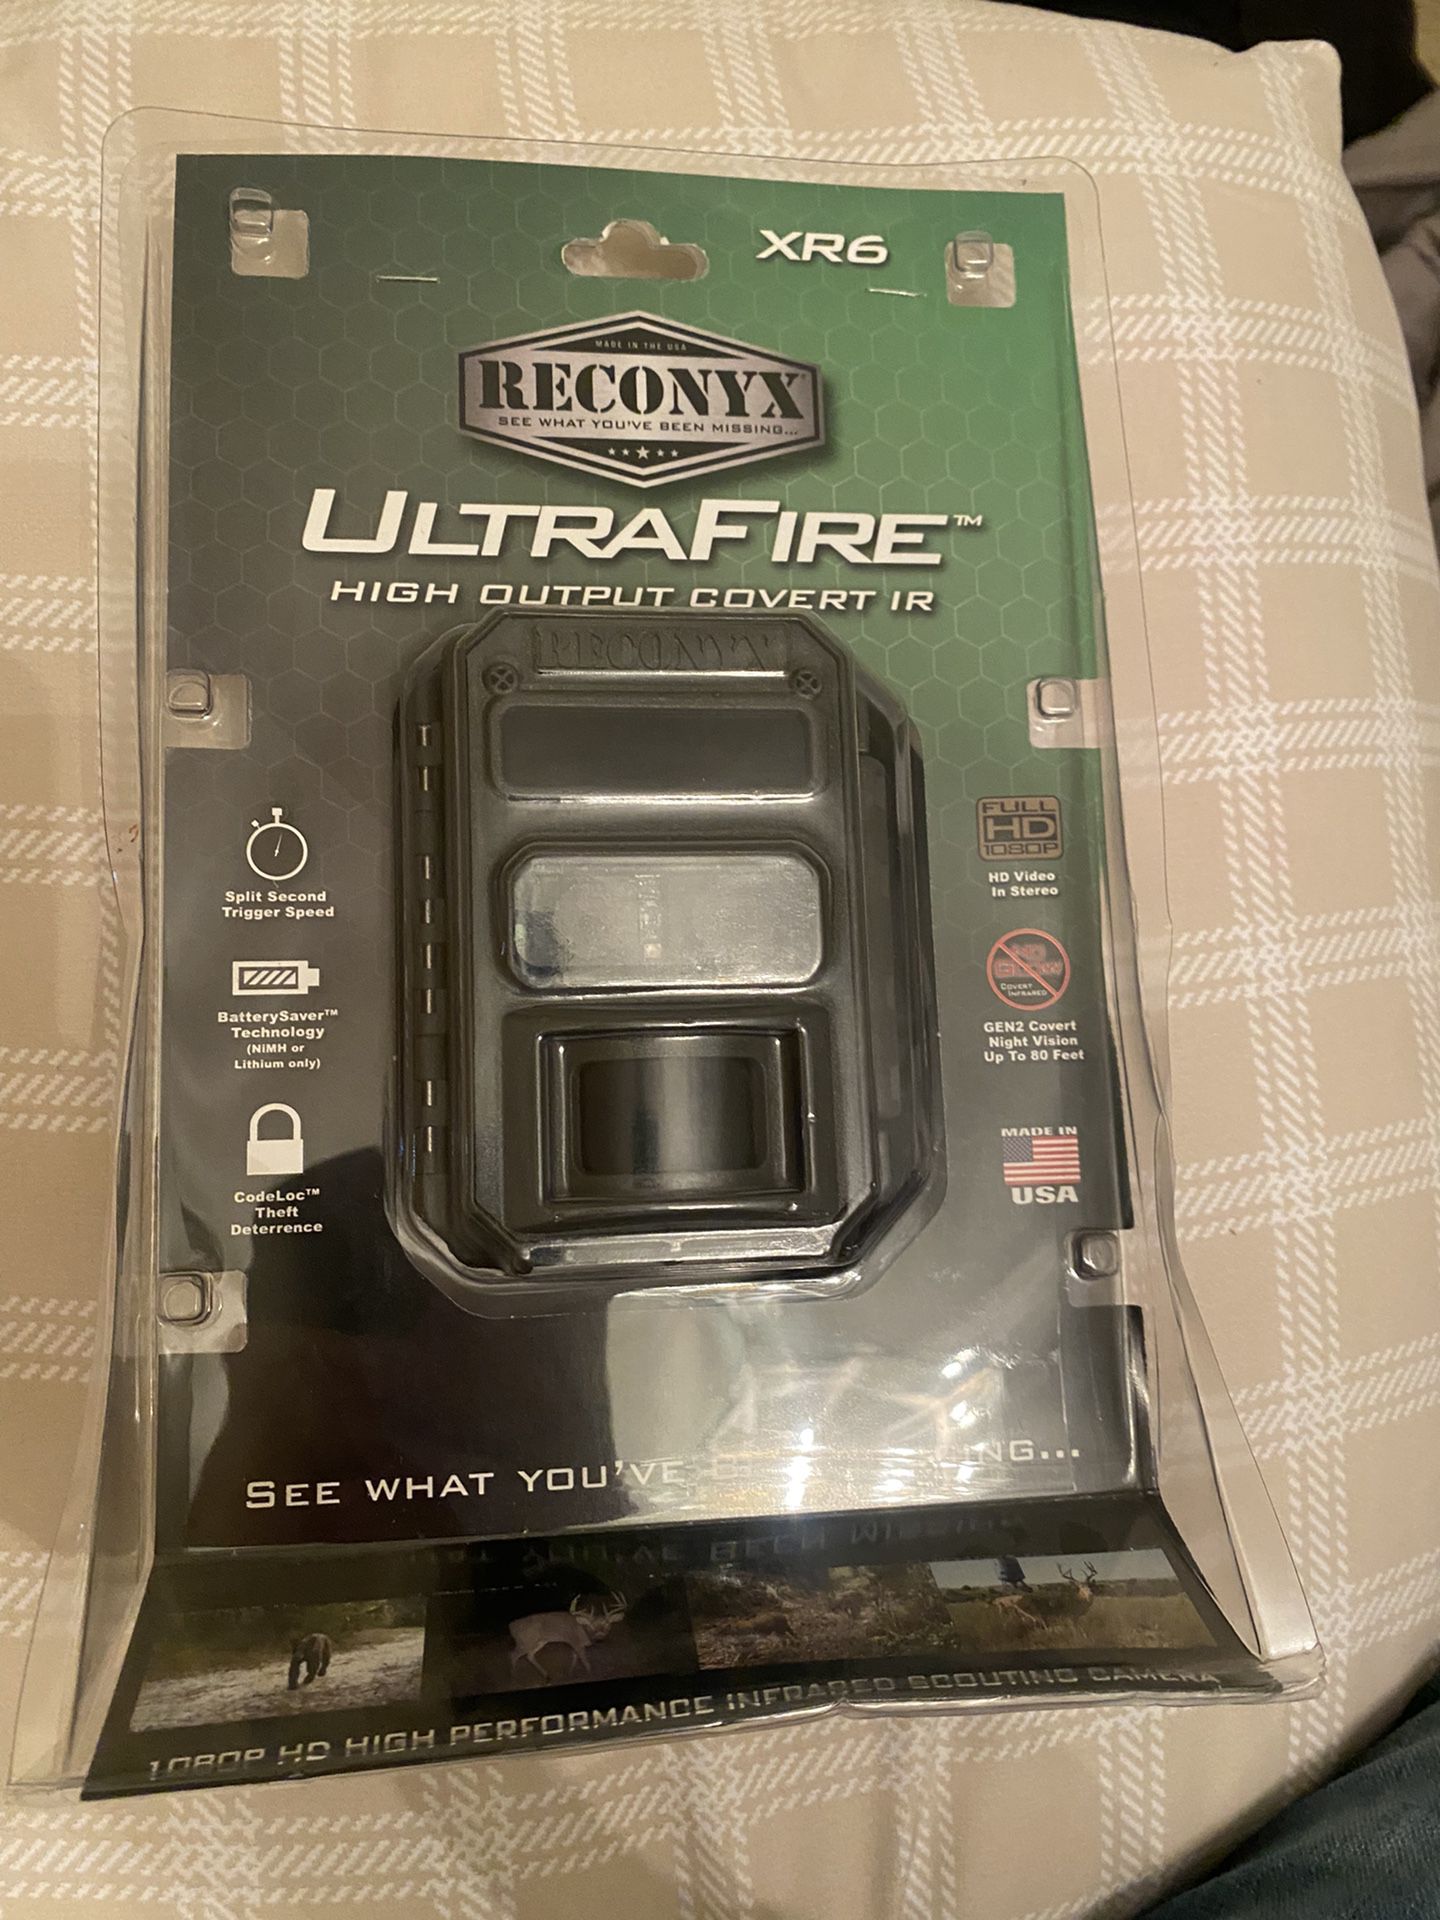 UltraFire Game Cam